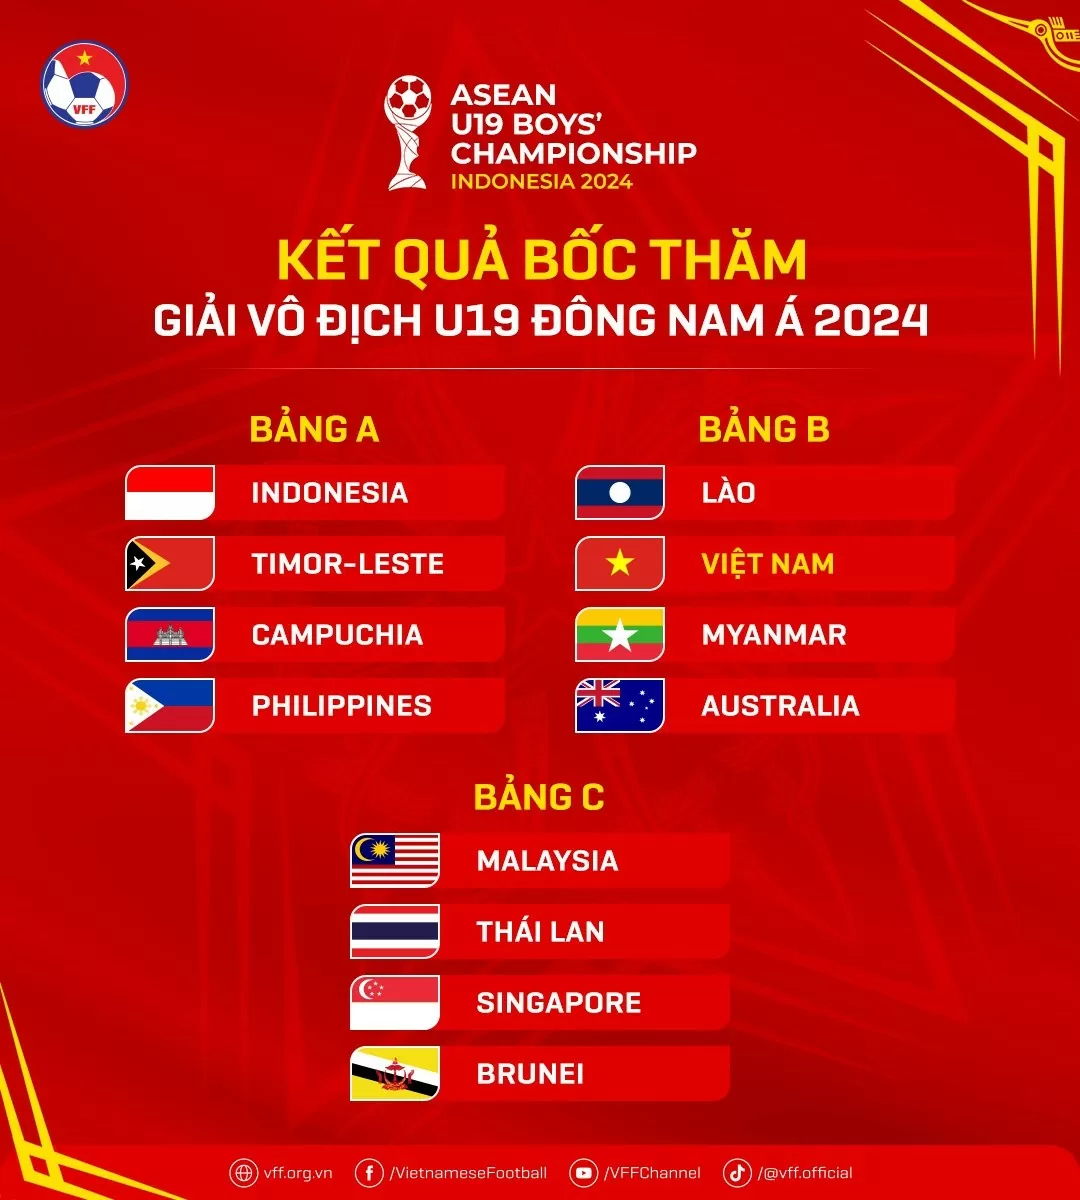 Lịch thi đấu của đội tuyển U19 Việt Nam tại giải vô địch U19 Đông Nam Á 2024